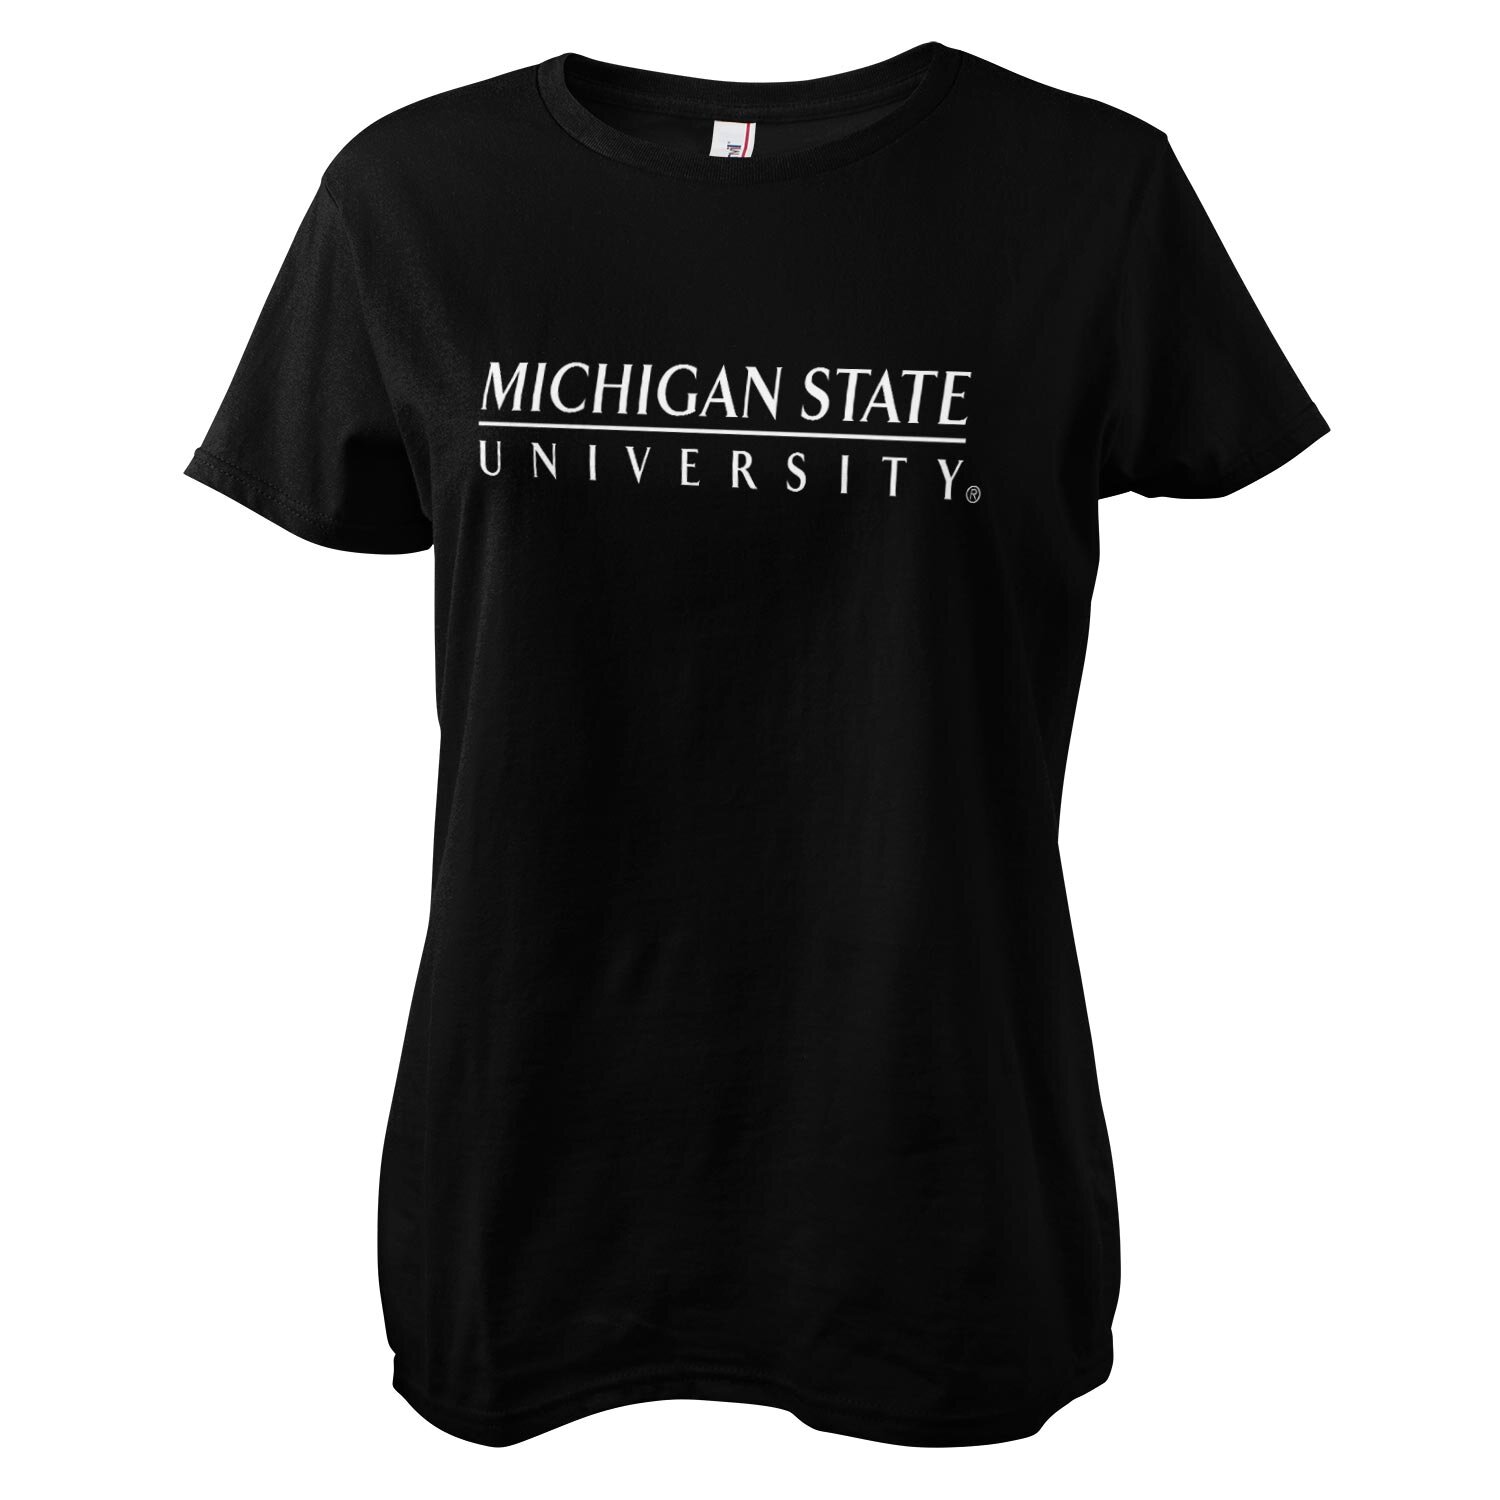 Michigan State University Girly Tee